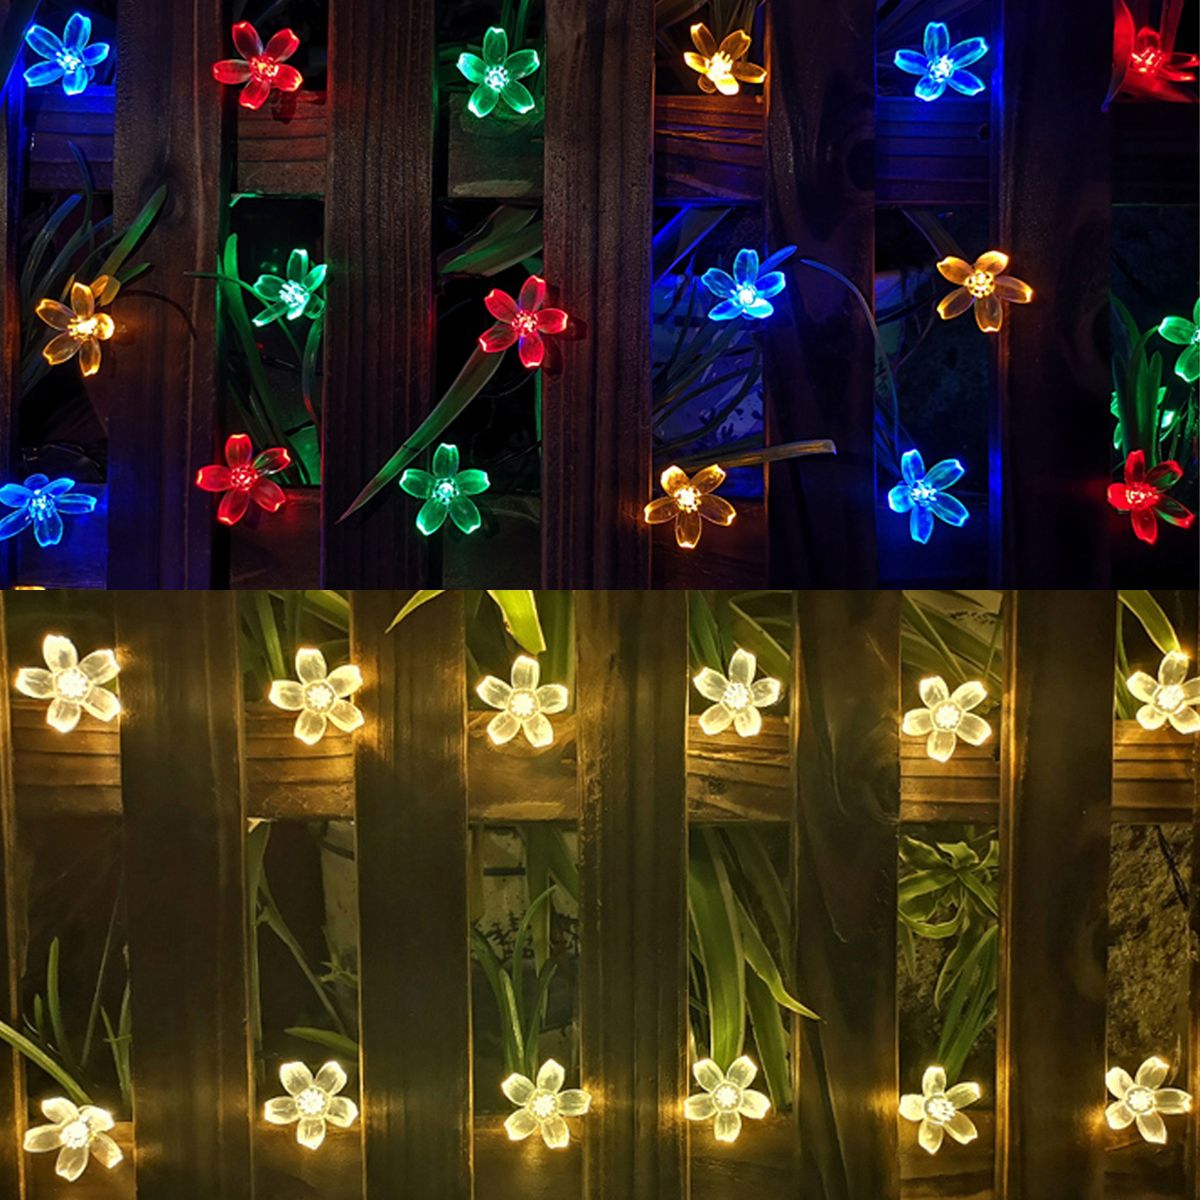 Solar-Powered-7M-LED-Sakura-Flower-String-Light-Long-Bright--Single-Mode7-Modes-Outdoor-Garden-Bloss-1633375